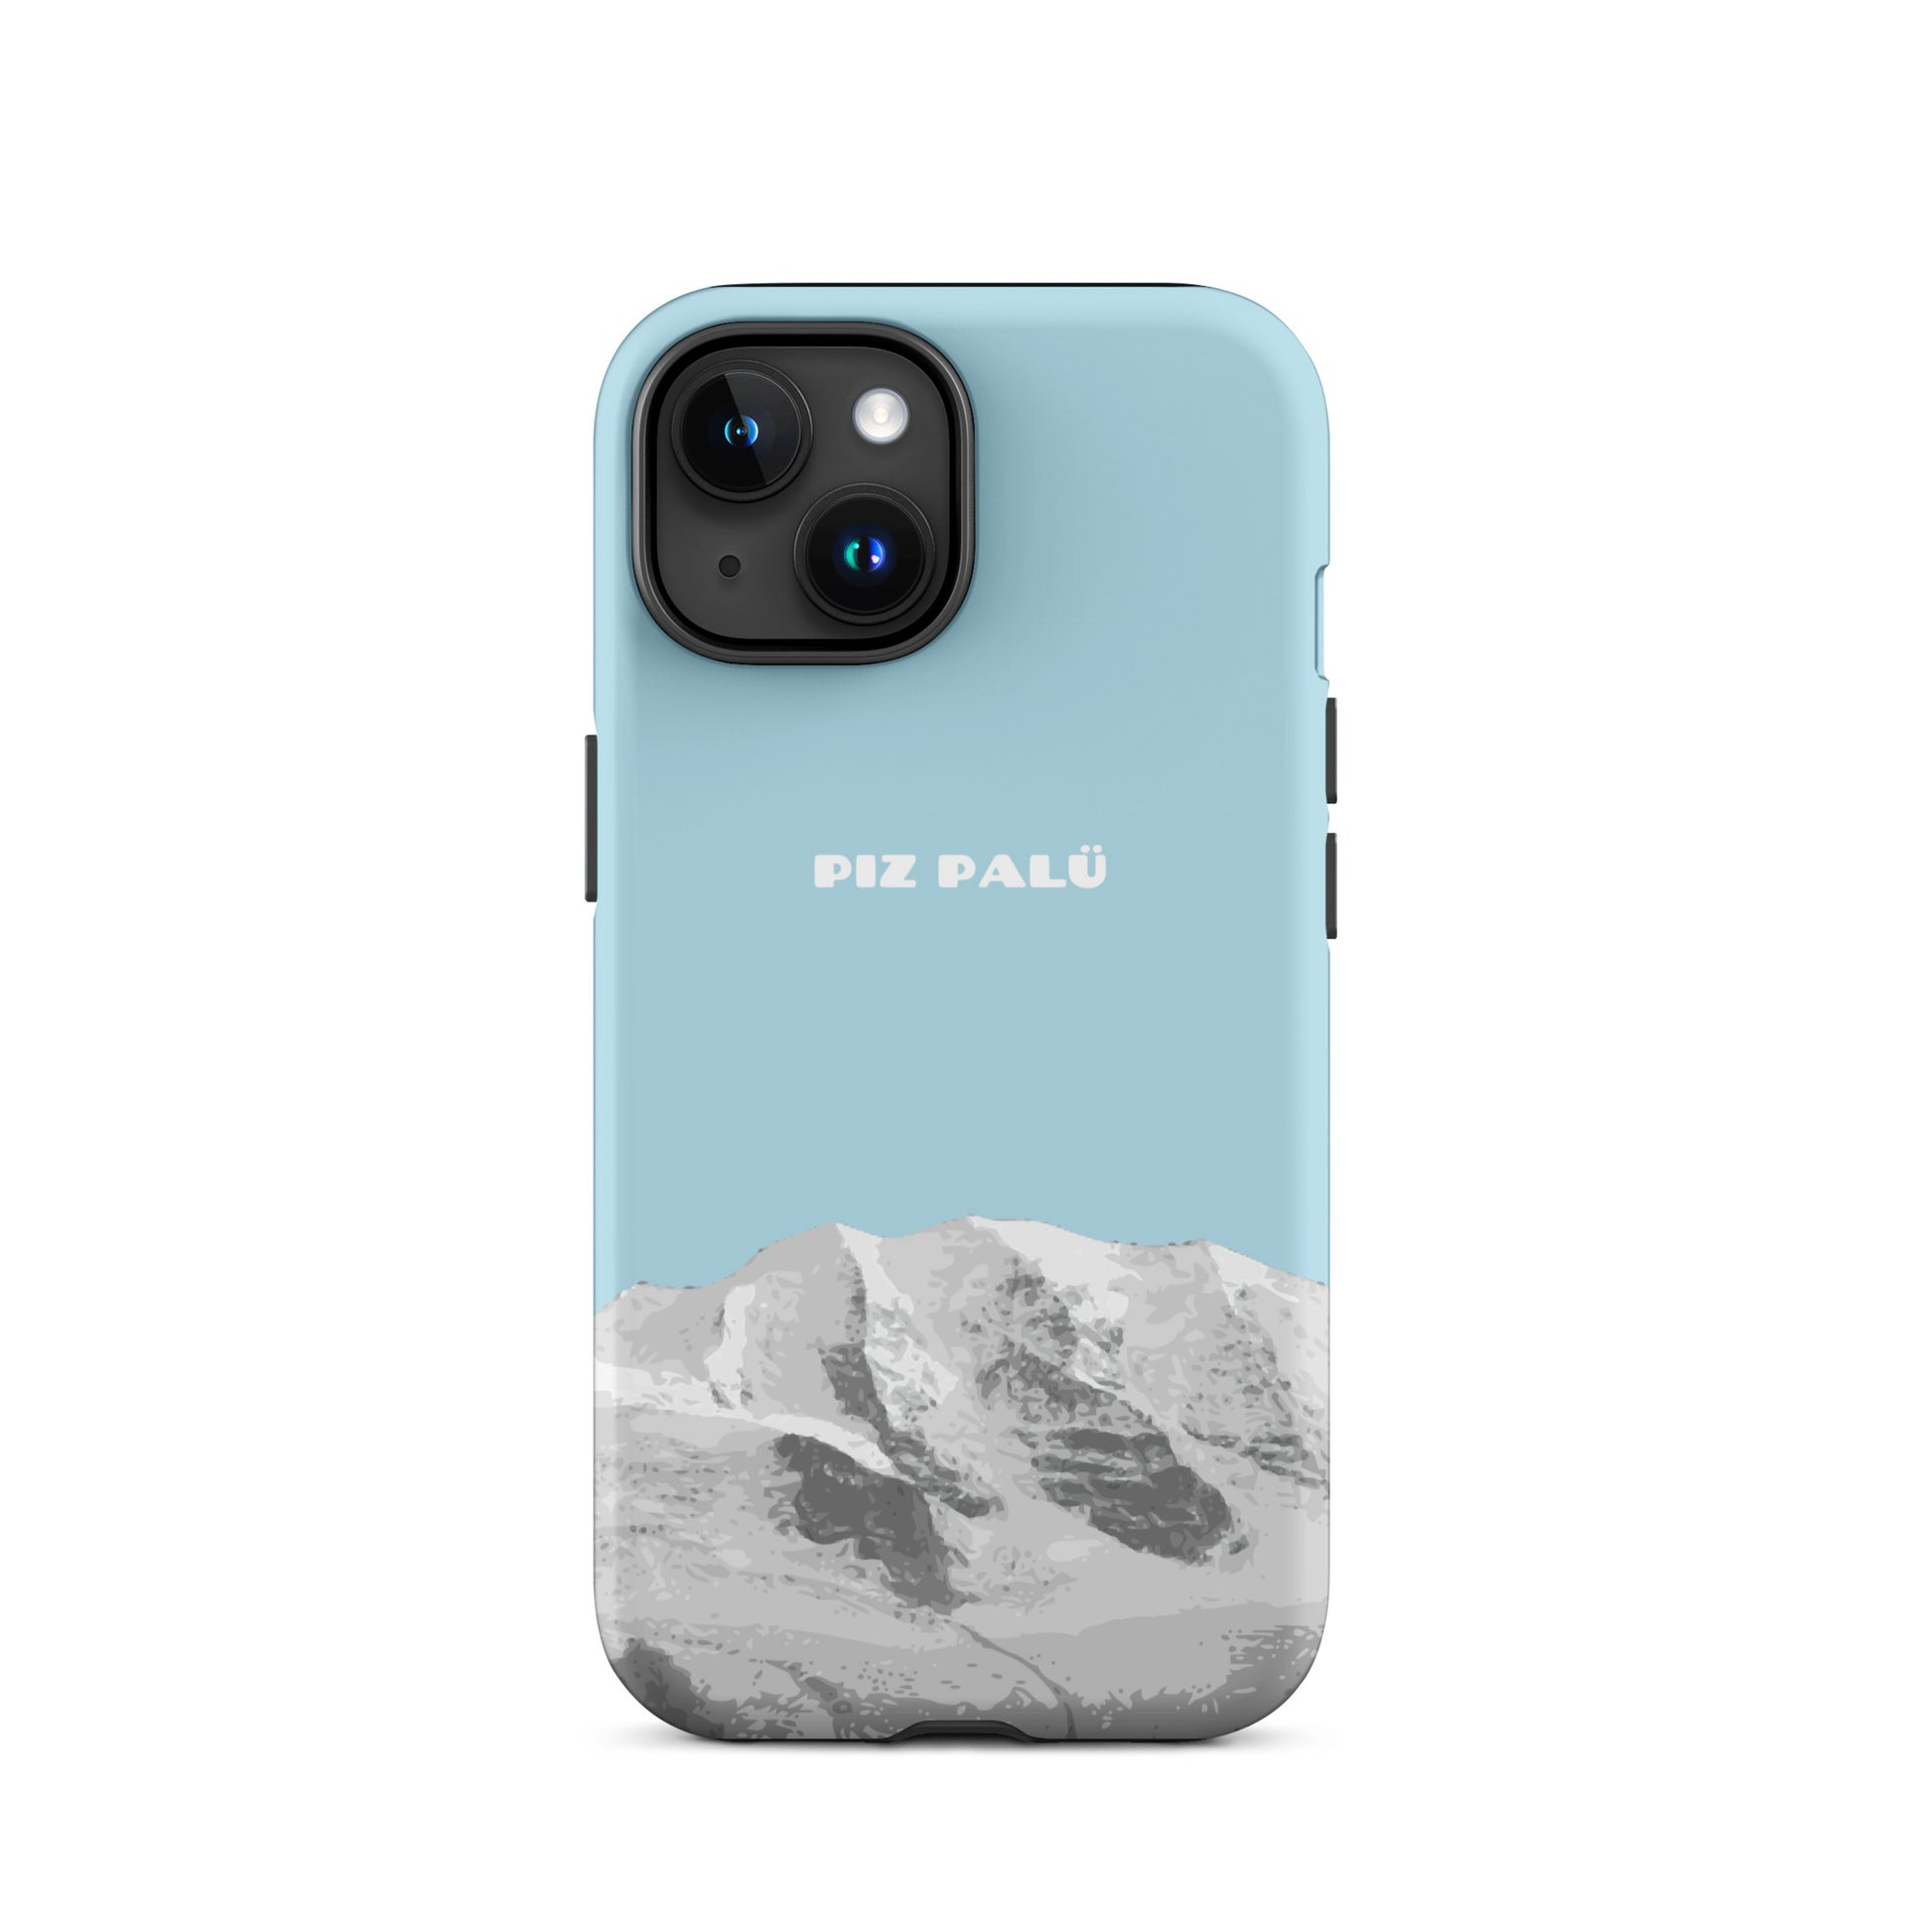 Hülle für das iPhone 15 von Apple in der Farbe Hellblau, dass den Piz Palü in Graubünden zeigt.